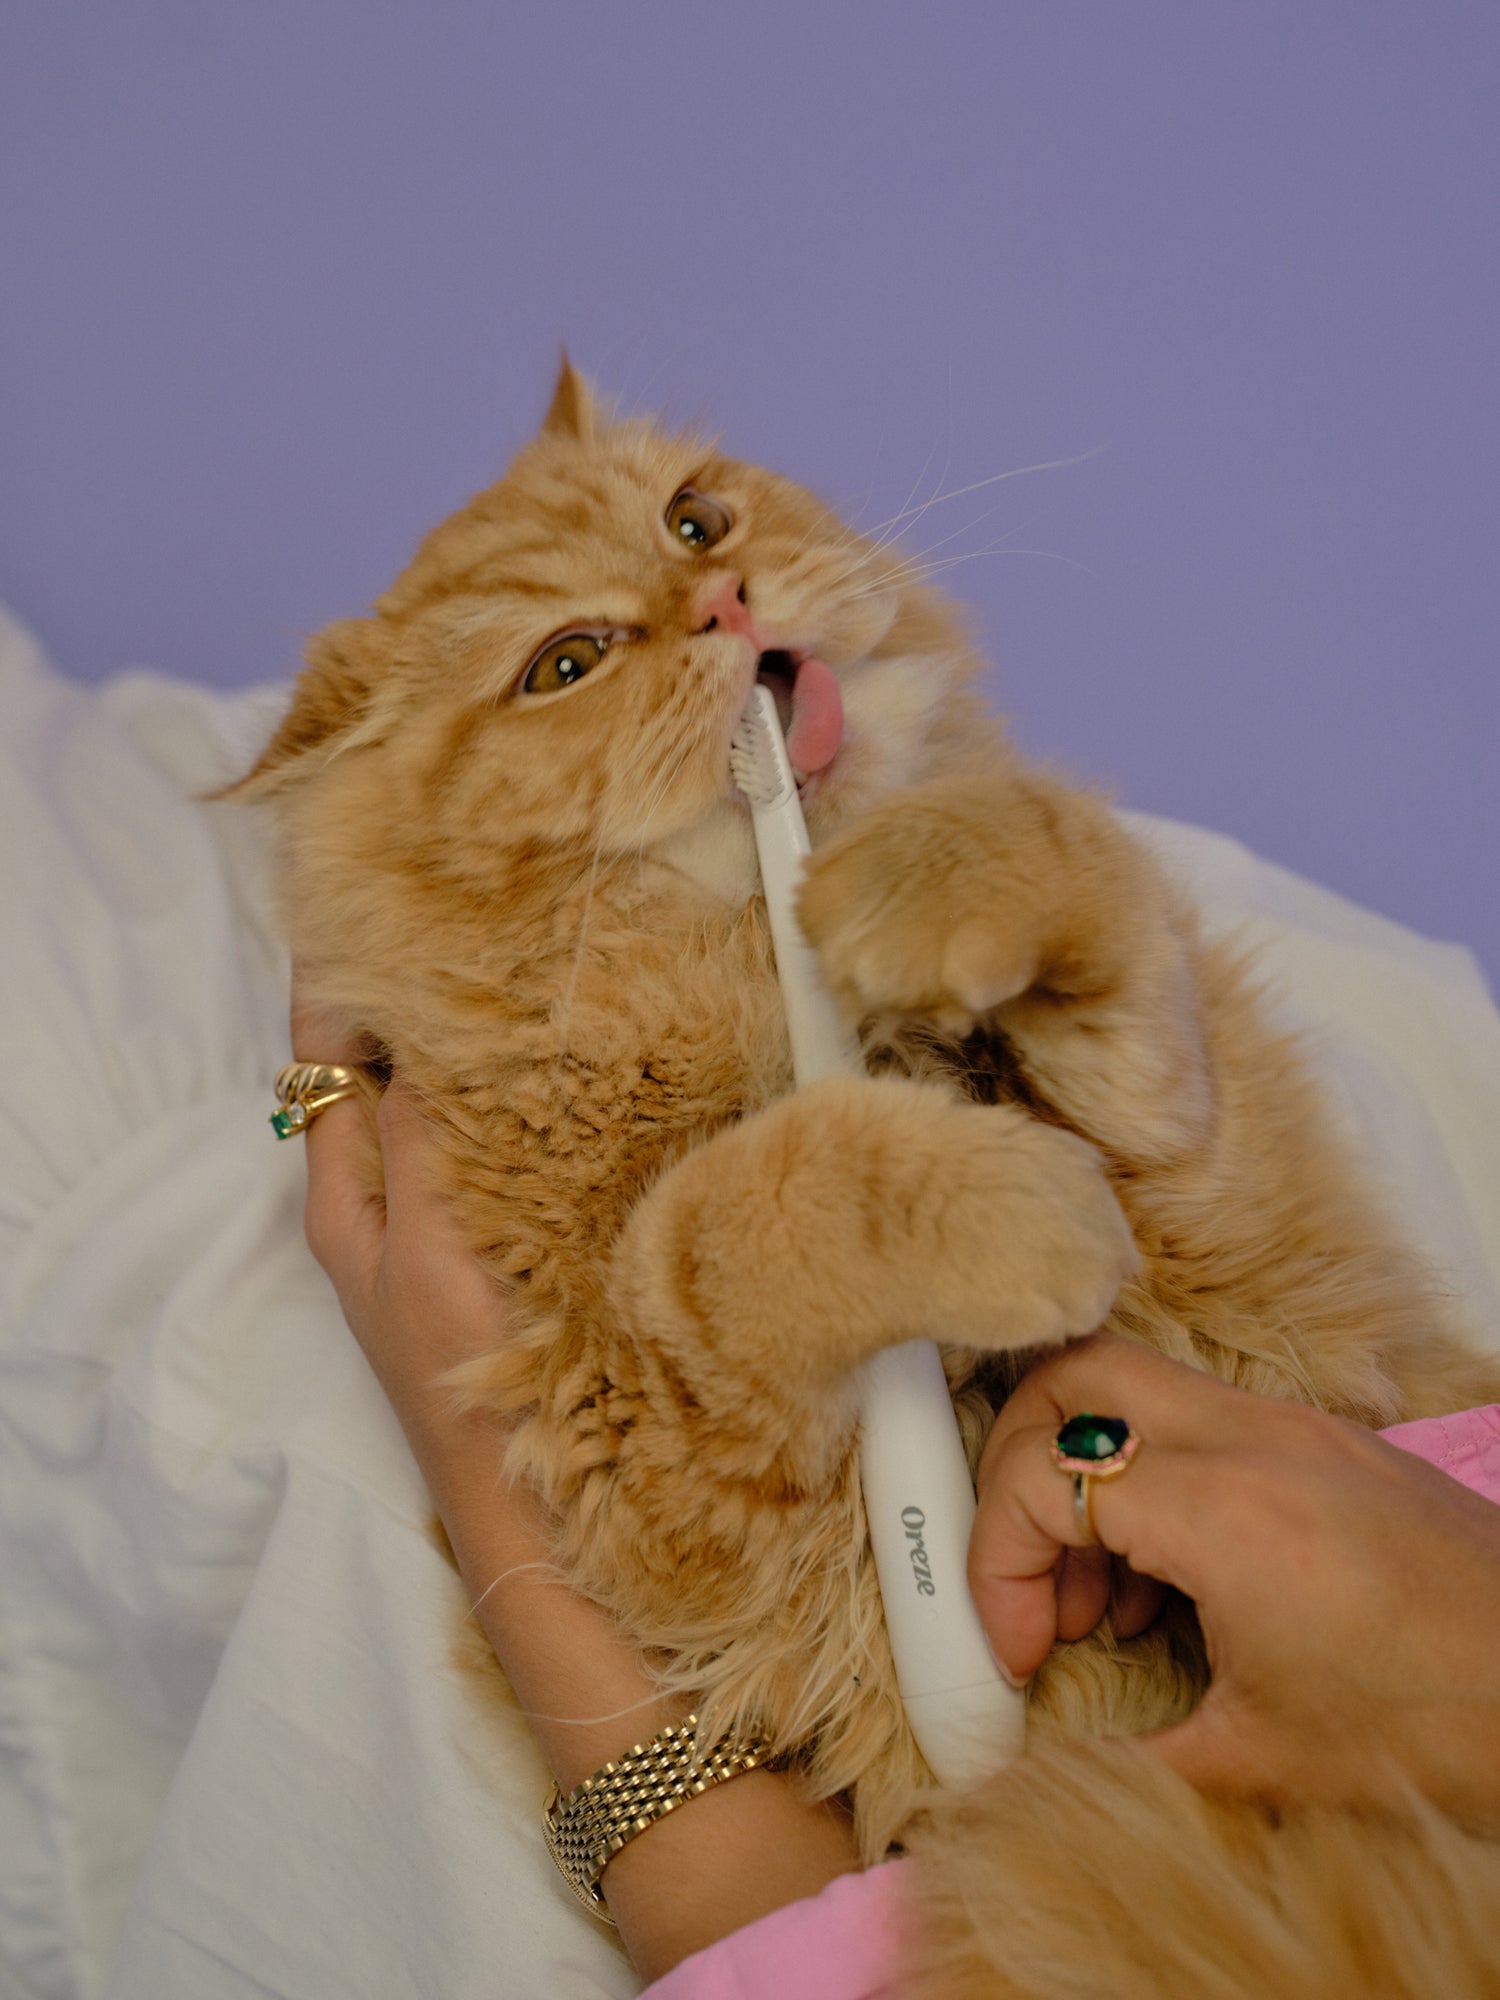 Orange cat holding the Oreze brush in its mouth